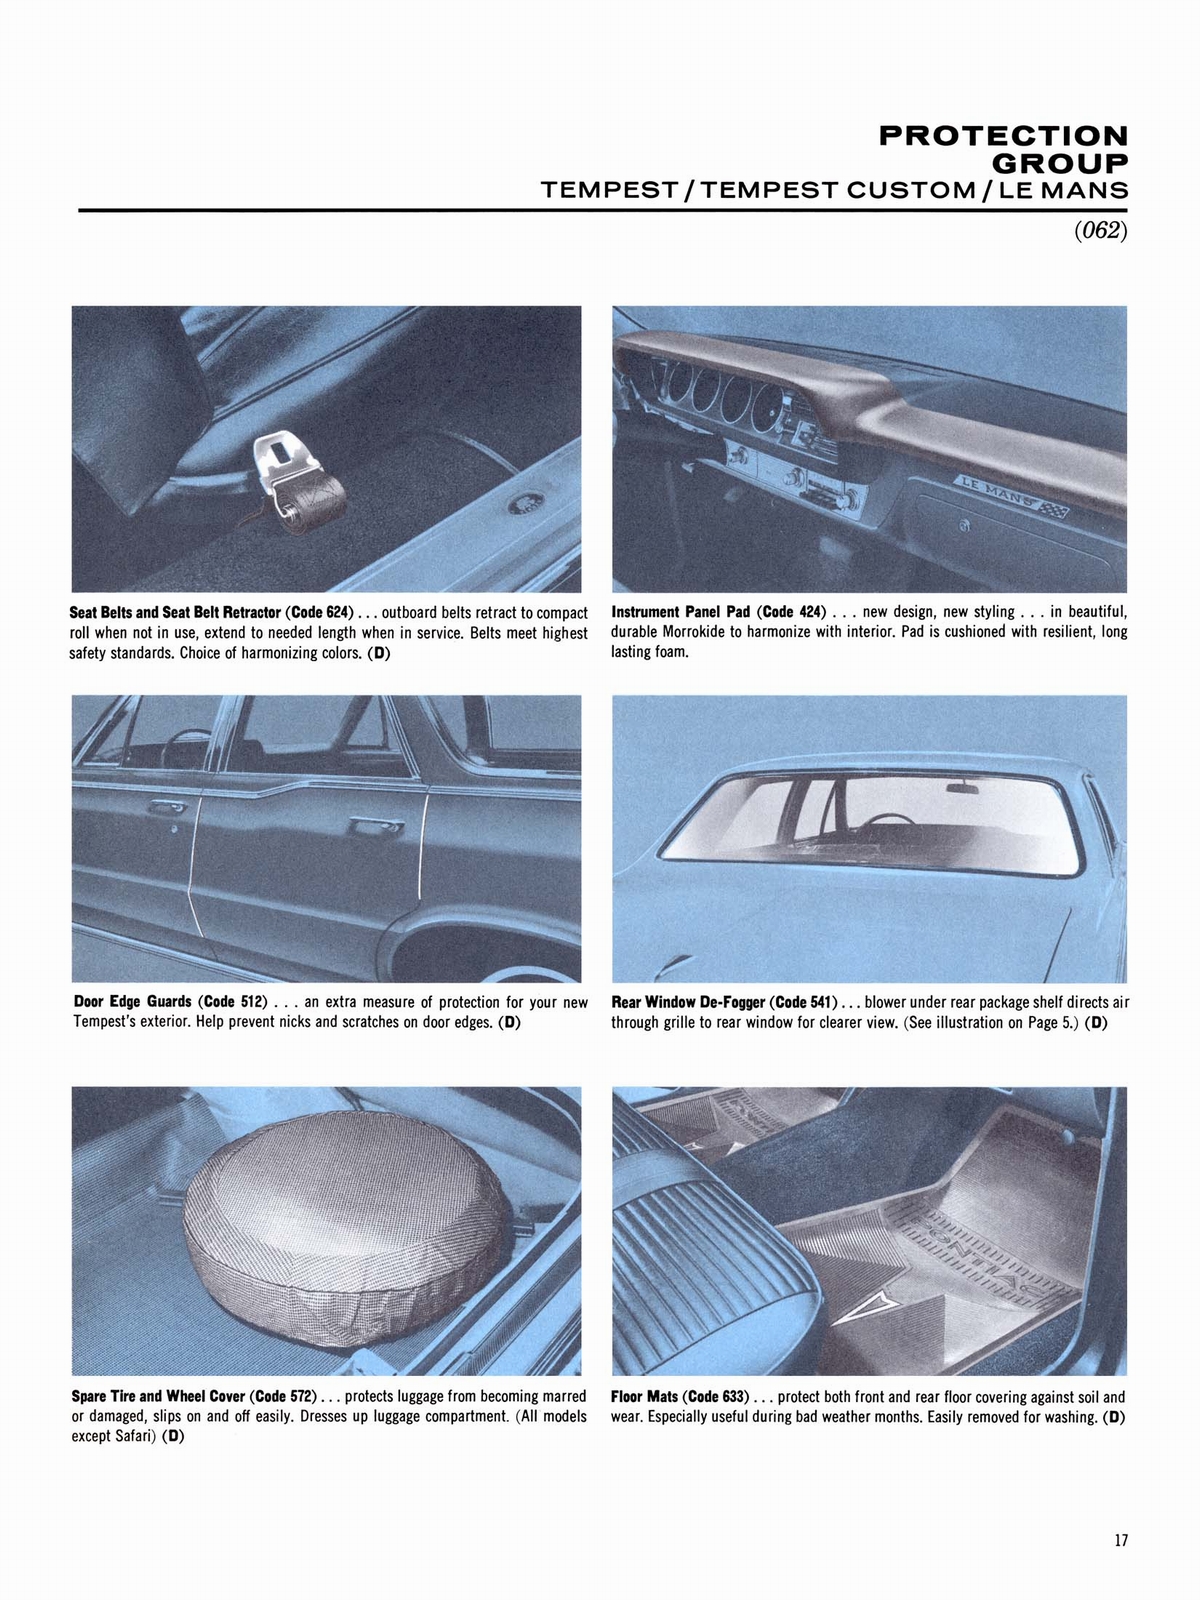 n_1964 Pontiac Accessories-17.jpg